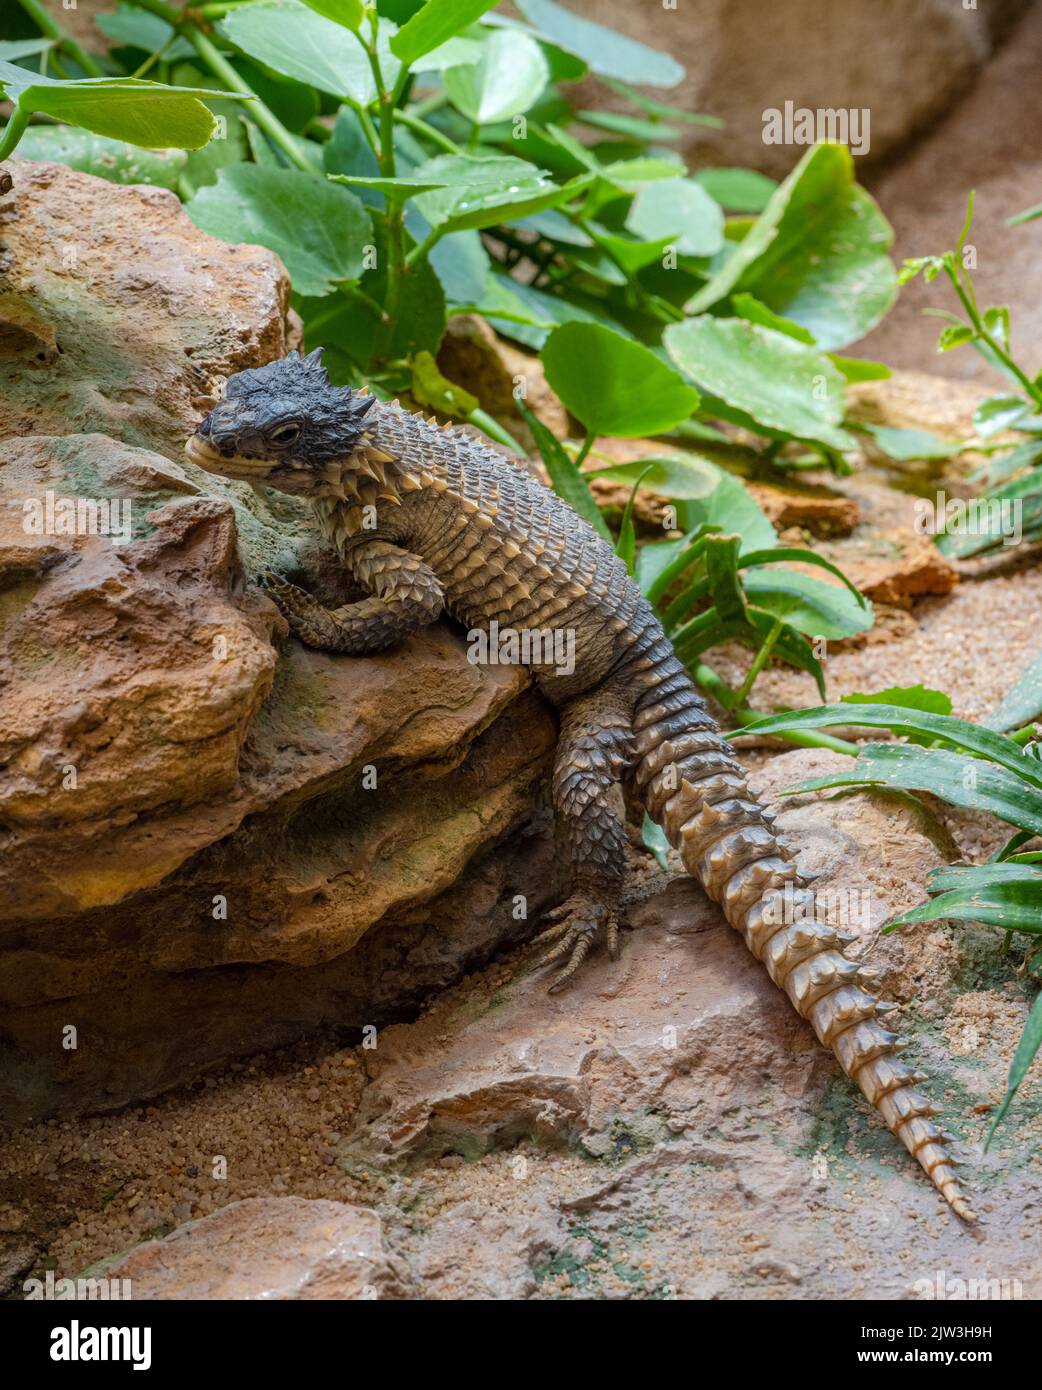 Giant Girdled Lizard, Cordylus giganteus, South Africa. Stock Photo